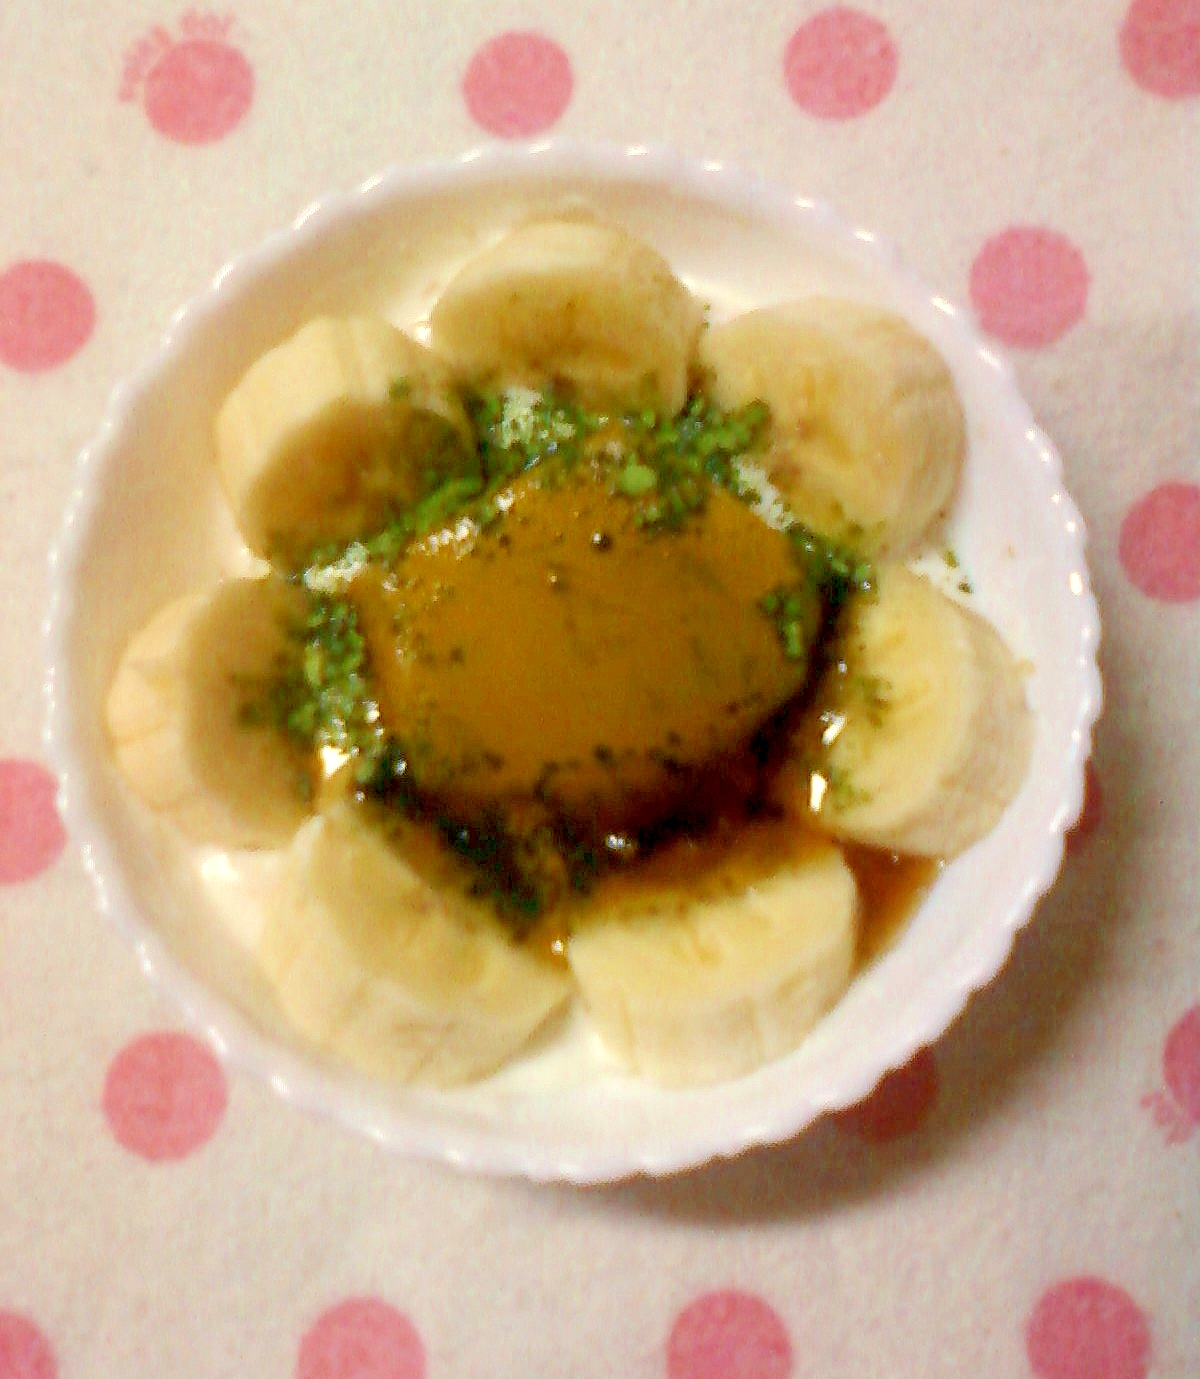 ☆・抹茶バナナとマンゴーゼリーのヨーグルト☆*:・